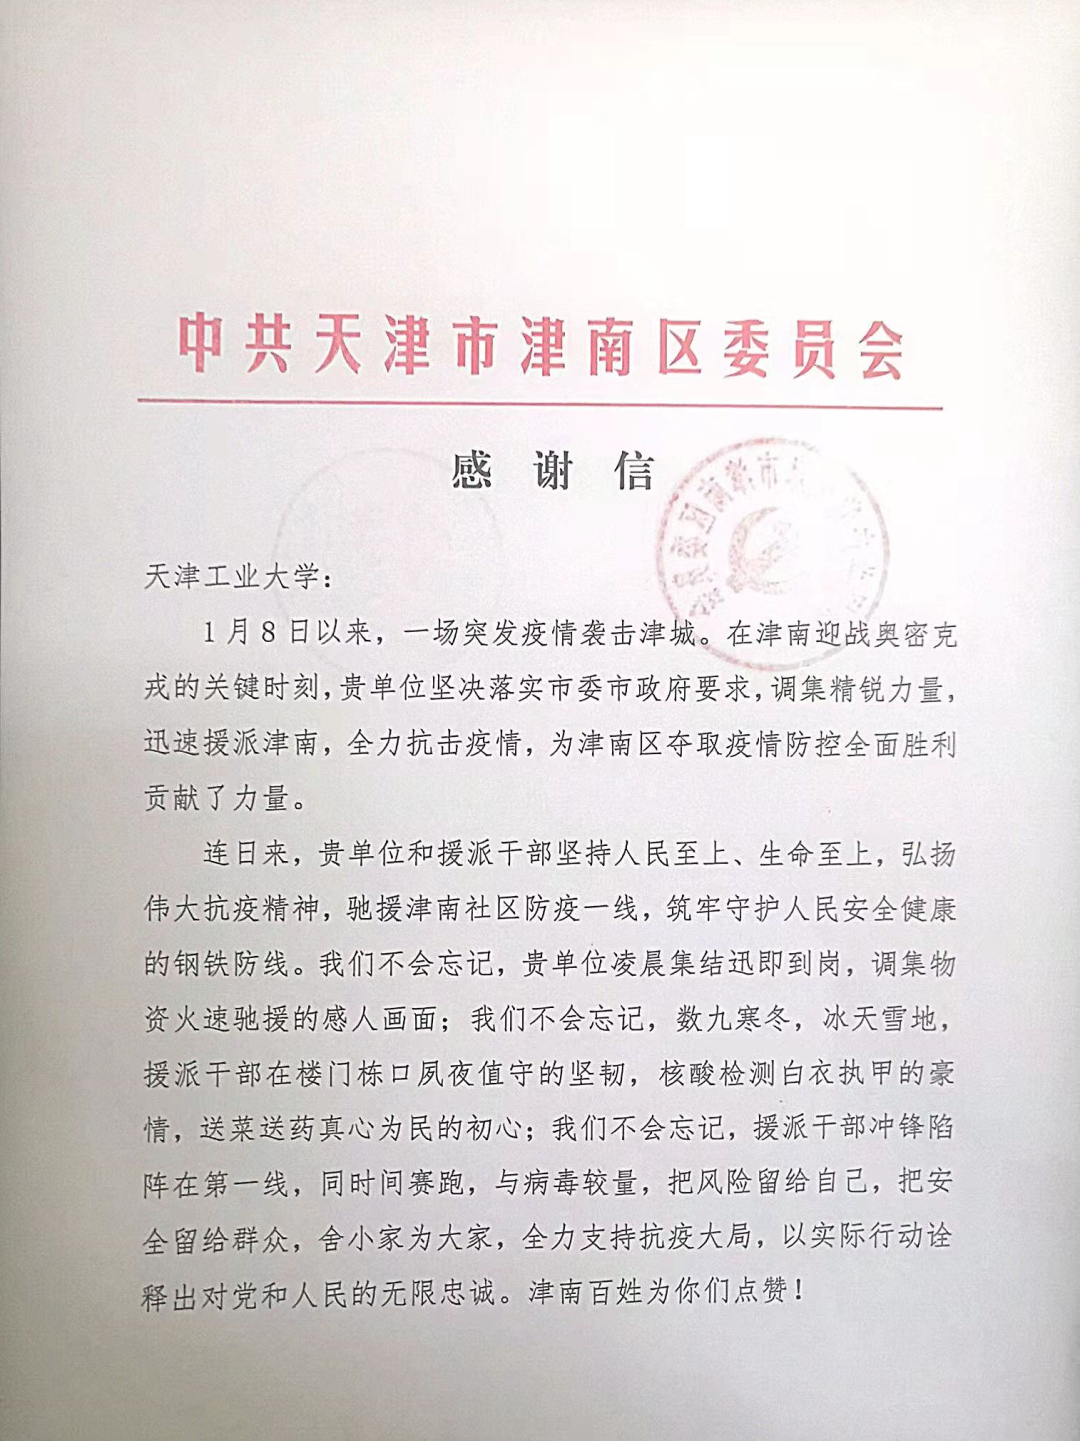 天津工业大学收到津南区委、区政府发来的感谢信